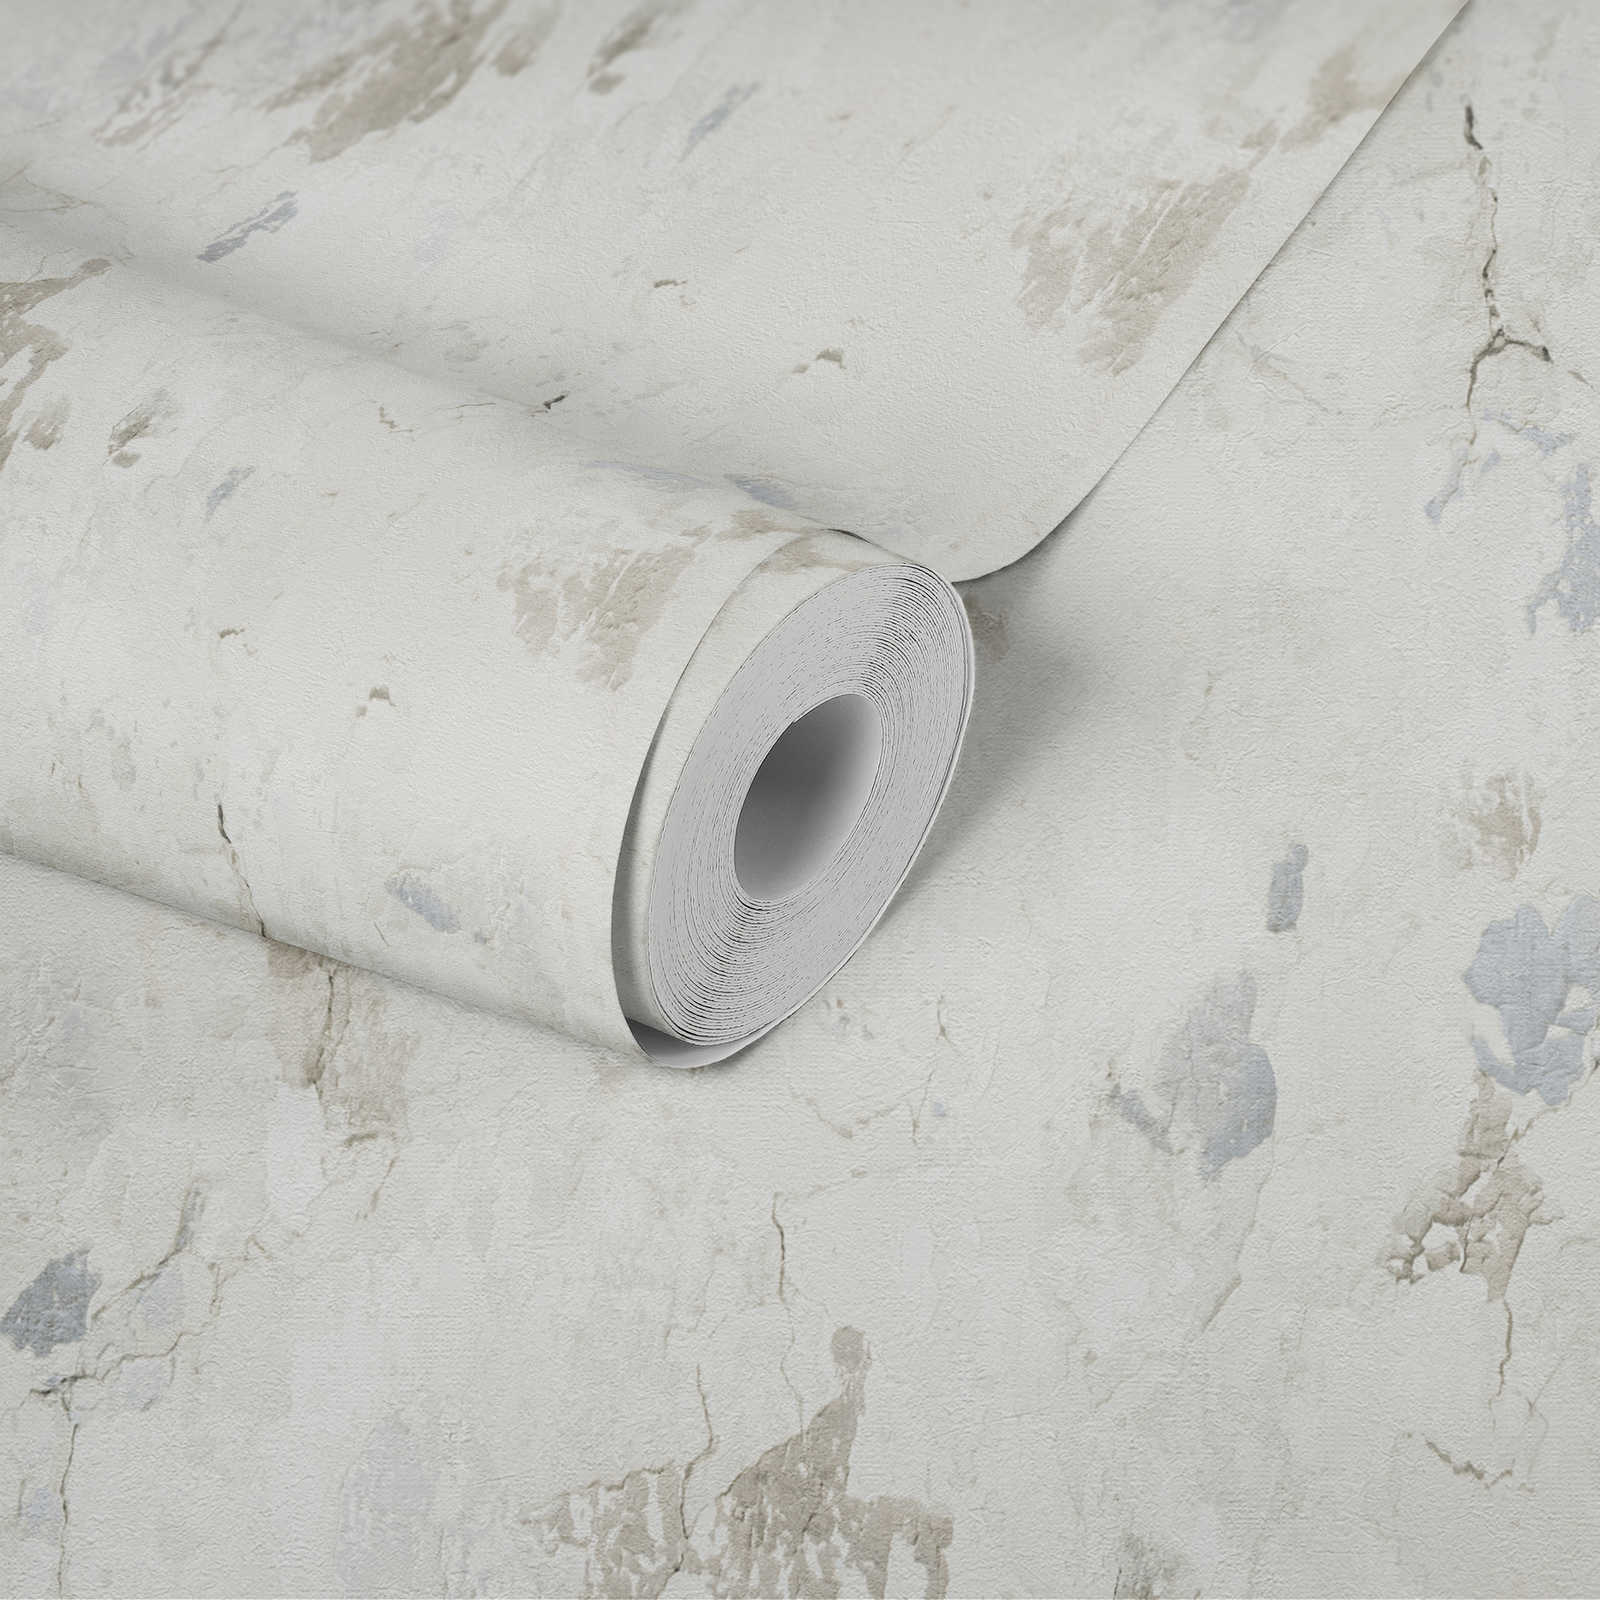             Papier peint aspect plâtre style industriel moderne - crème, gris
        